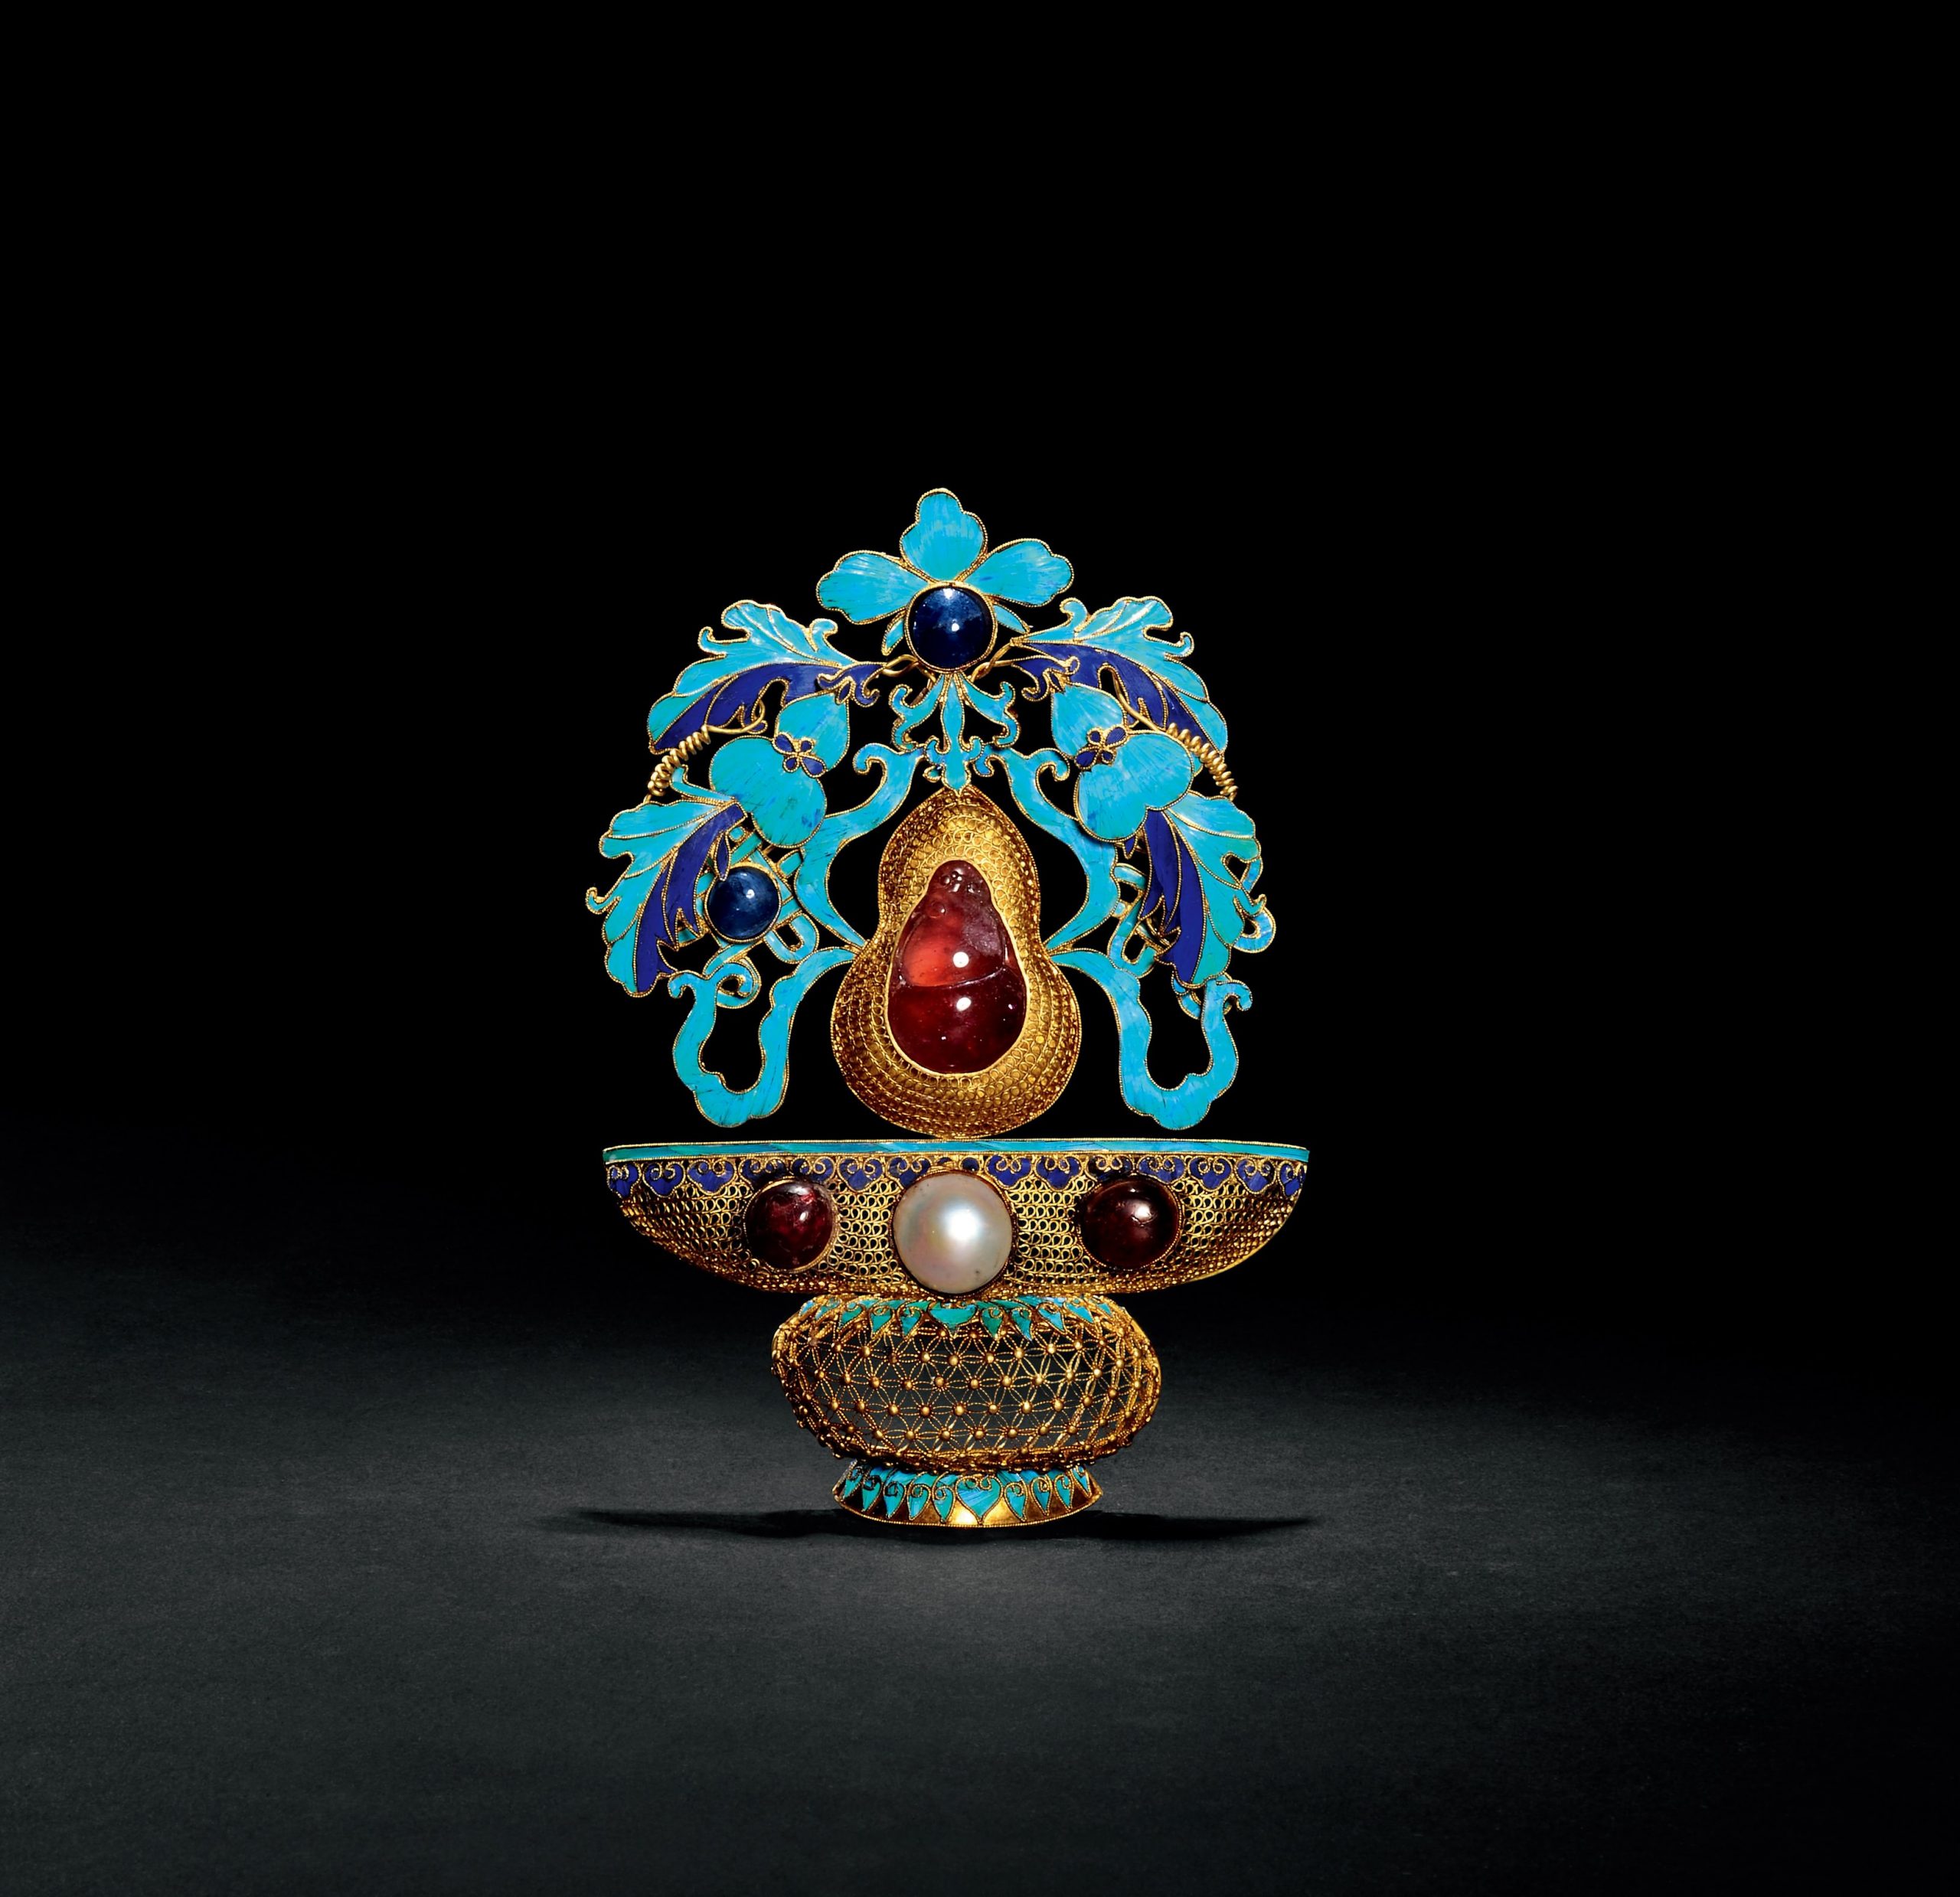 传统之美-中国古代点翠首饰鉴赏-建盏二公主